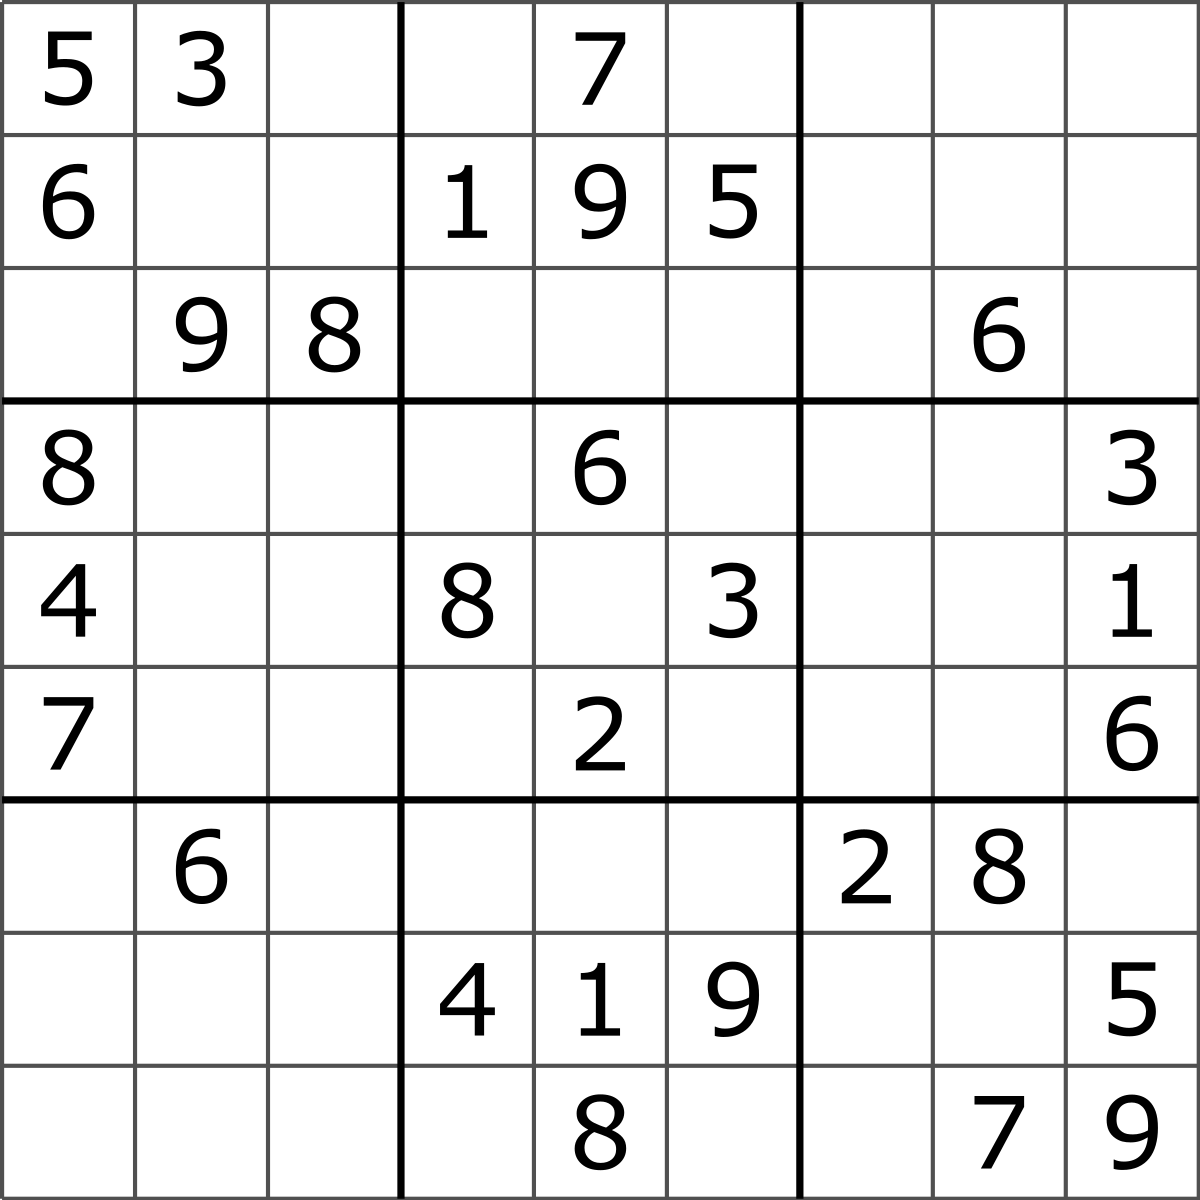 1200px-Sudoku_Puzzle_by_L2G-20050714_standardized_layout.svg.png